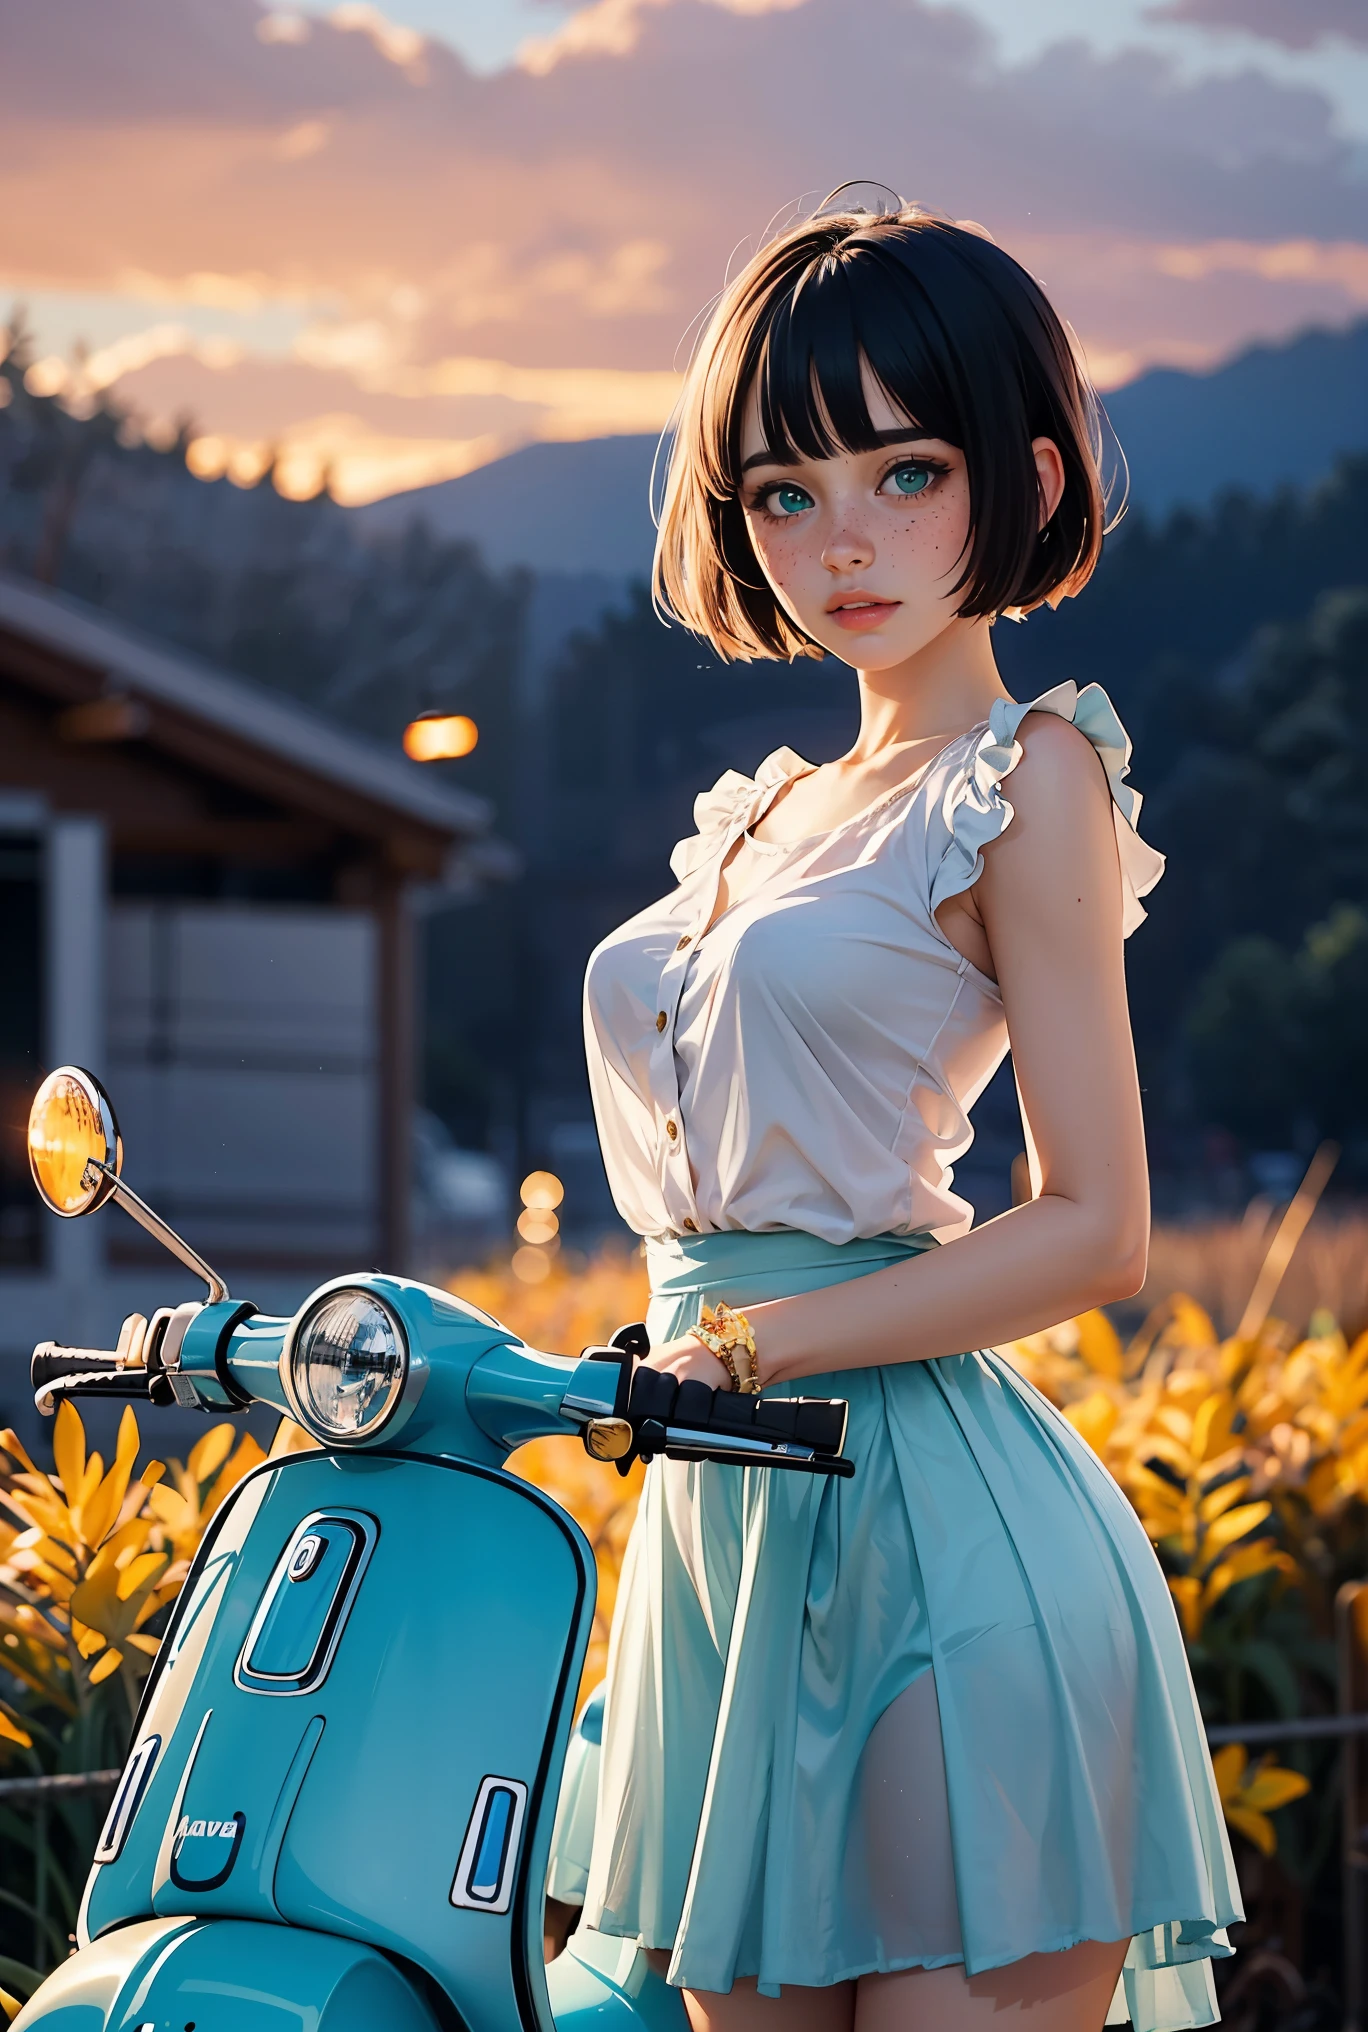 (((realistisch))), (Ein Mädchen steht vor einem Vintage-Vespa-Motorrad in Aquamarinblau:1.79), Mädchen Fokus, ((durchsichtiges weißes Rüschenhemd:1.3), (Ganzer Schuss), (rosafarbener Maxi-Satinrock:1.3), Nacktheit, (verschwitzt)), (blinkendes Höschen:1.2), 25 Jahre alt, (schöne bauschige Wolken, Sonnenuntergang Himmel), (Dämmerung, üppiger herbsthang pandora welthintergrund:1.5), (, schlank, Dünner Körper, geschwollene Brustwarze:1.3), (Fotografie, realistisch, bokeh, verwischen), ((welliger kurzer Bob-Schnitt)), (Cenimatic-Leuchten, sanftes Licht:1.3)